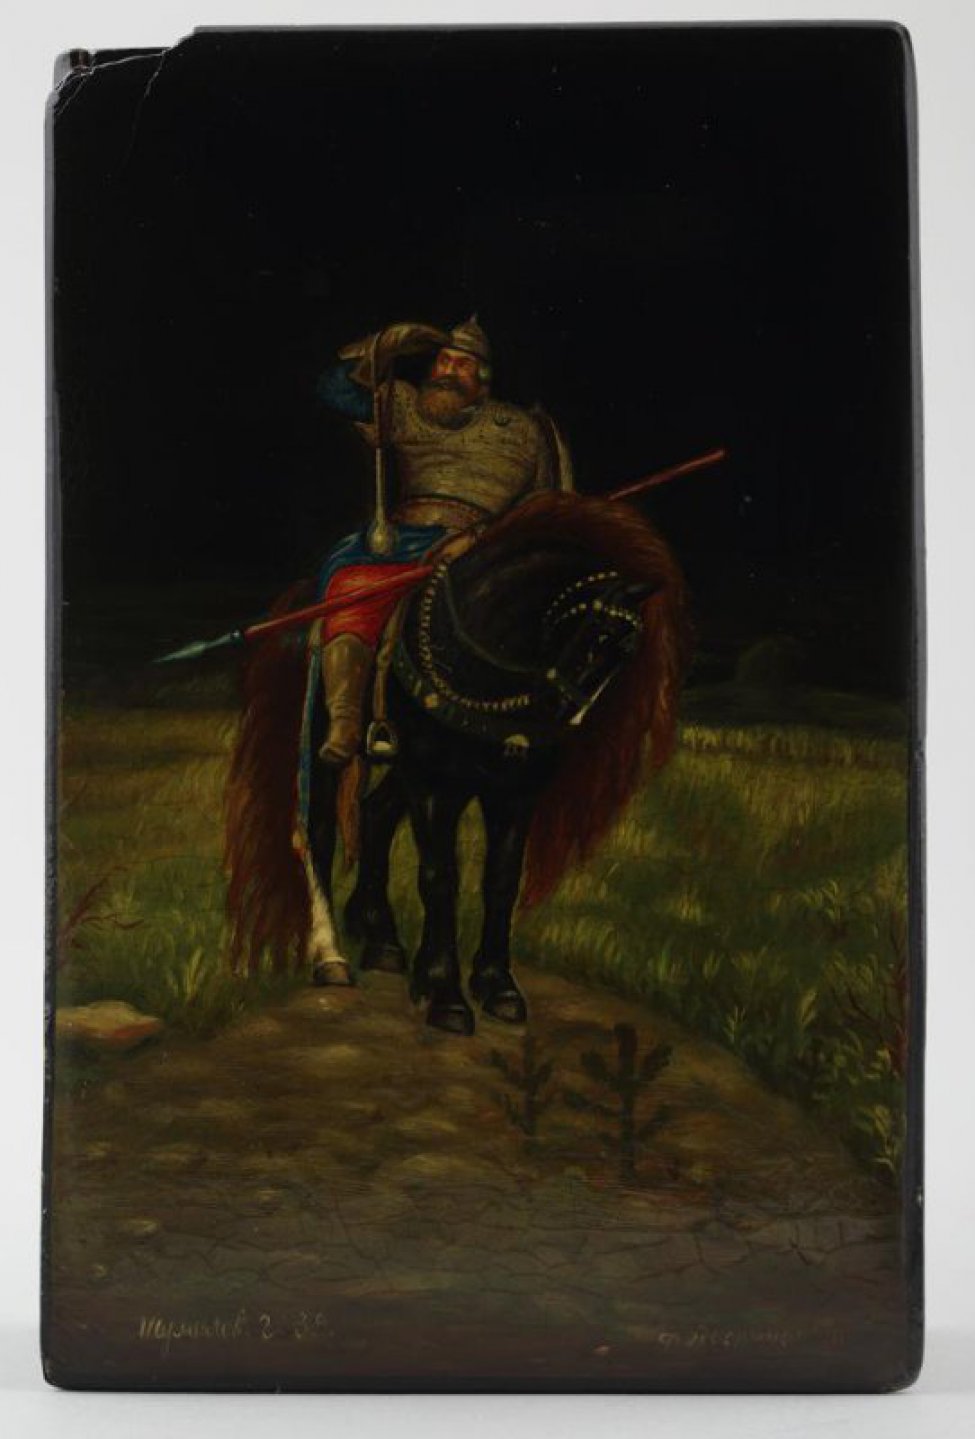 Прямоугольной формы, черного цвета. На крышке на фоне пейзажа изображен всадник на вороном коне. Внизу надписи: "Шумилов Г. 39", "Федоскино". Внутри шкатулка красного цвета.